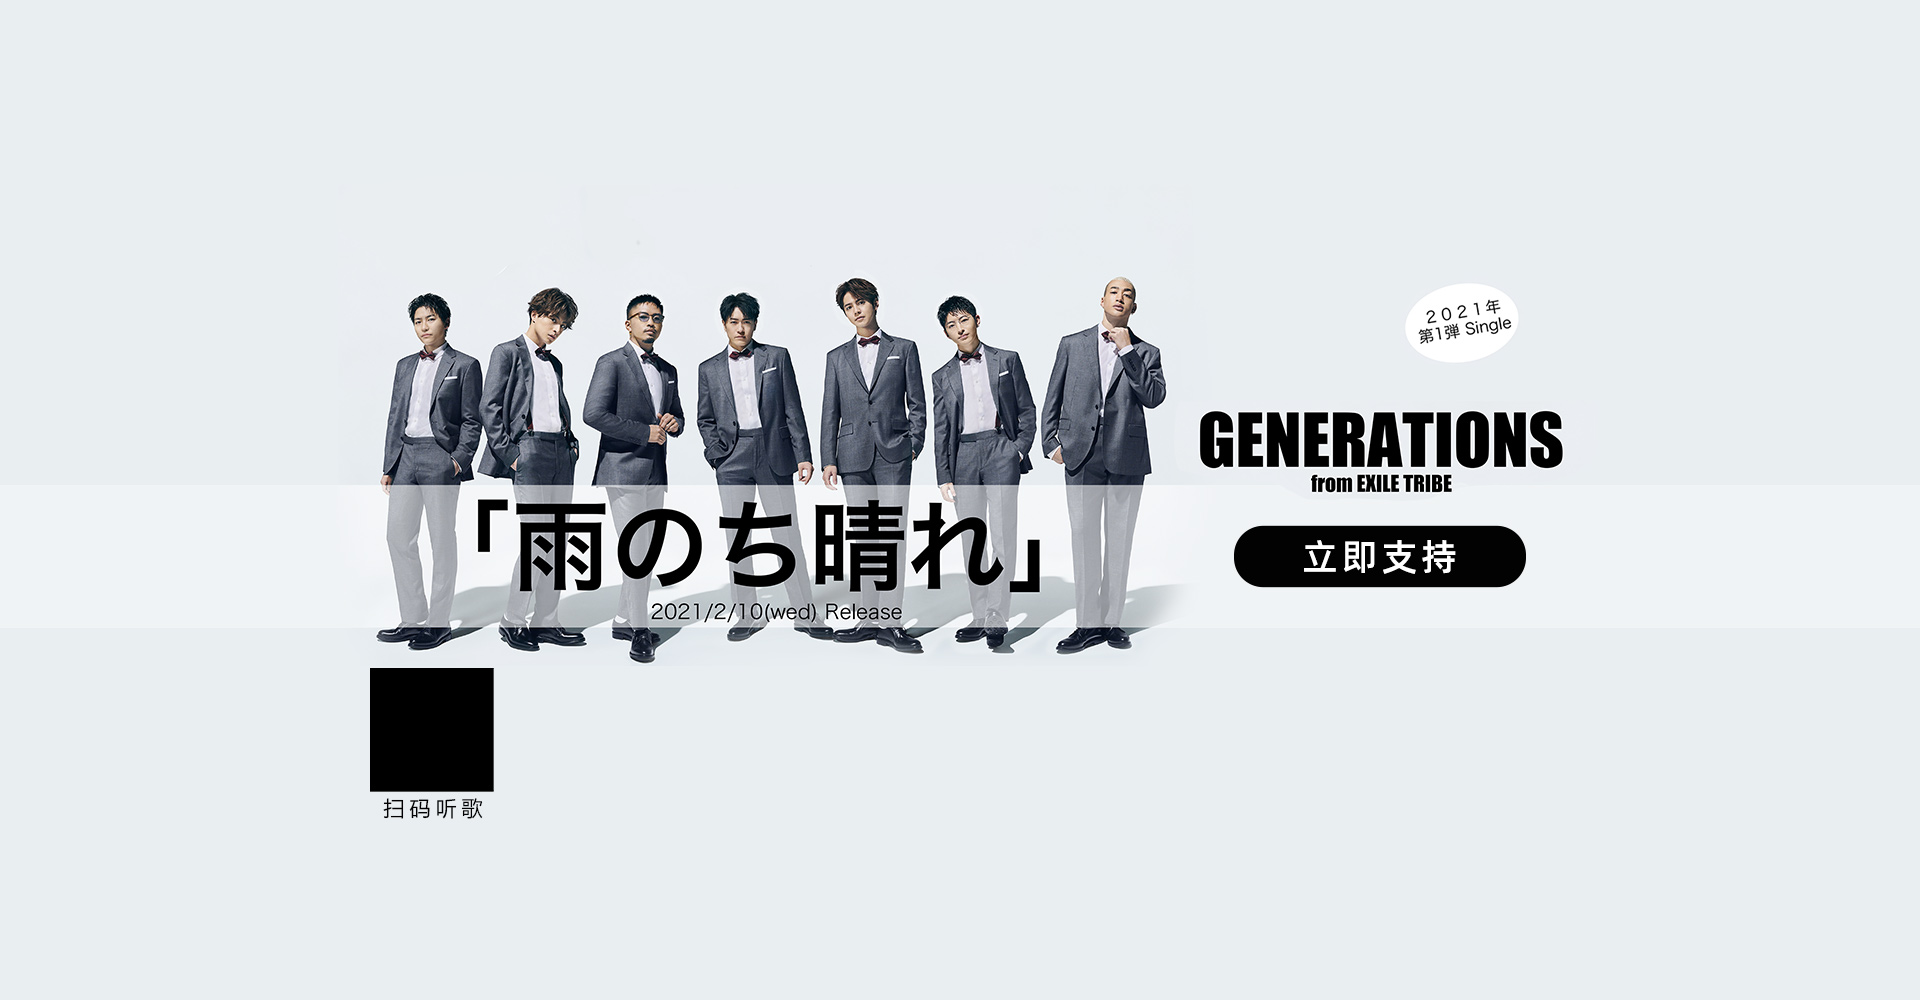 【数字专辑】GENERATIONS from EXILE TRIBE《雨のち晴れ》